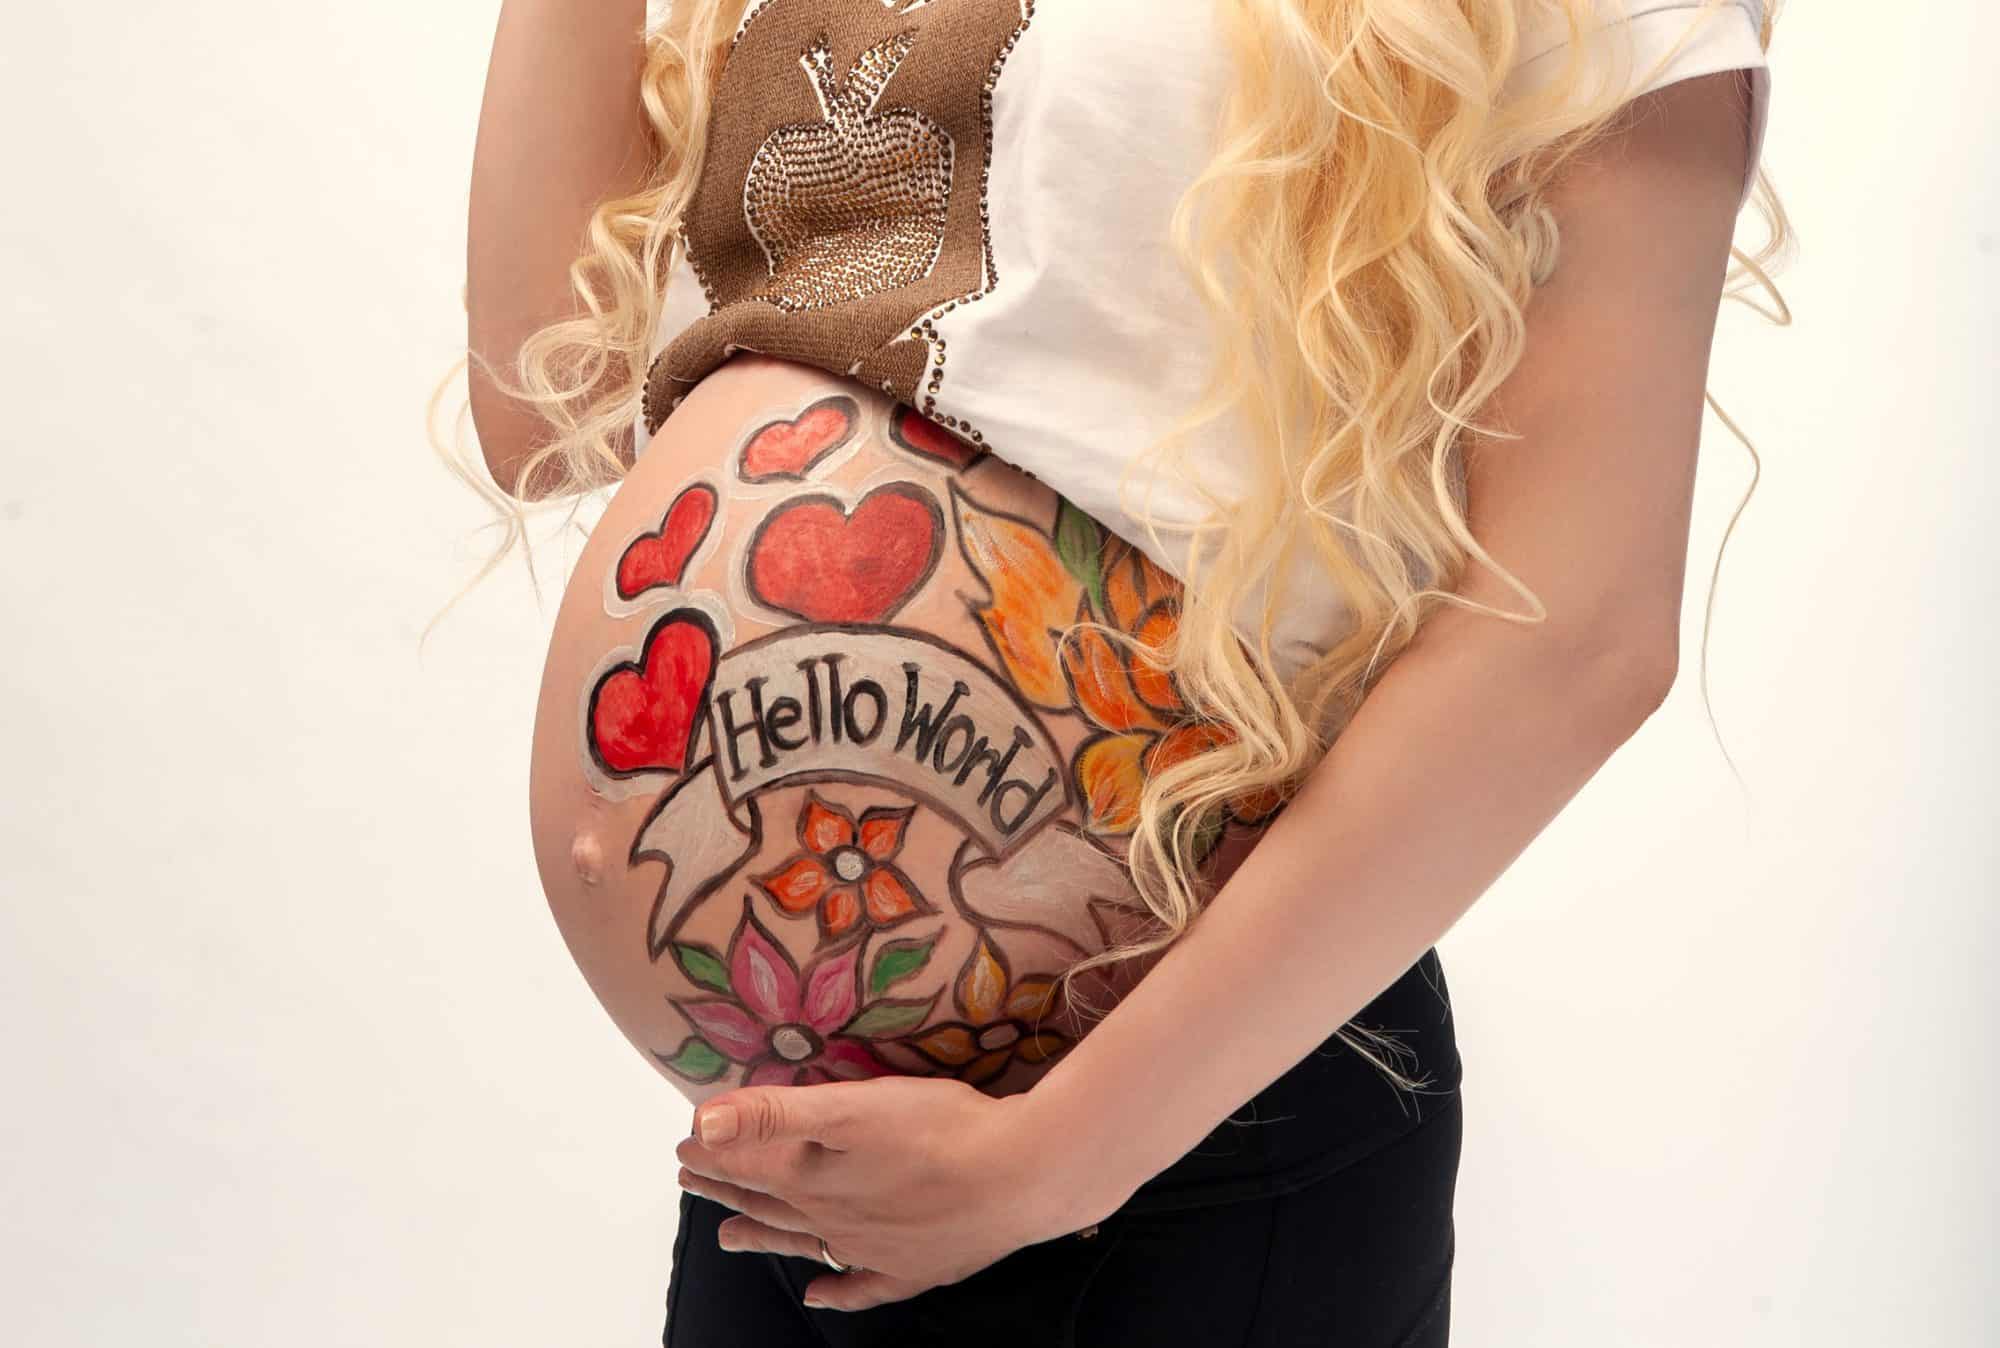 ¿Es seguro pintarse la tripa durante el embarazo? - Belly painting